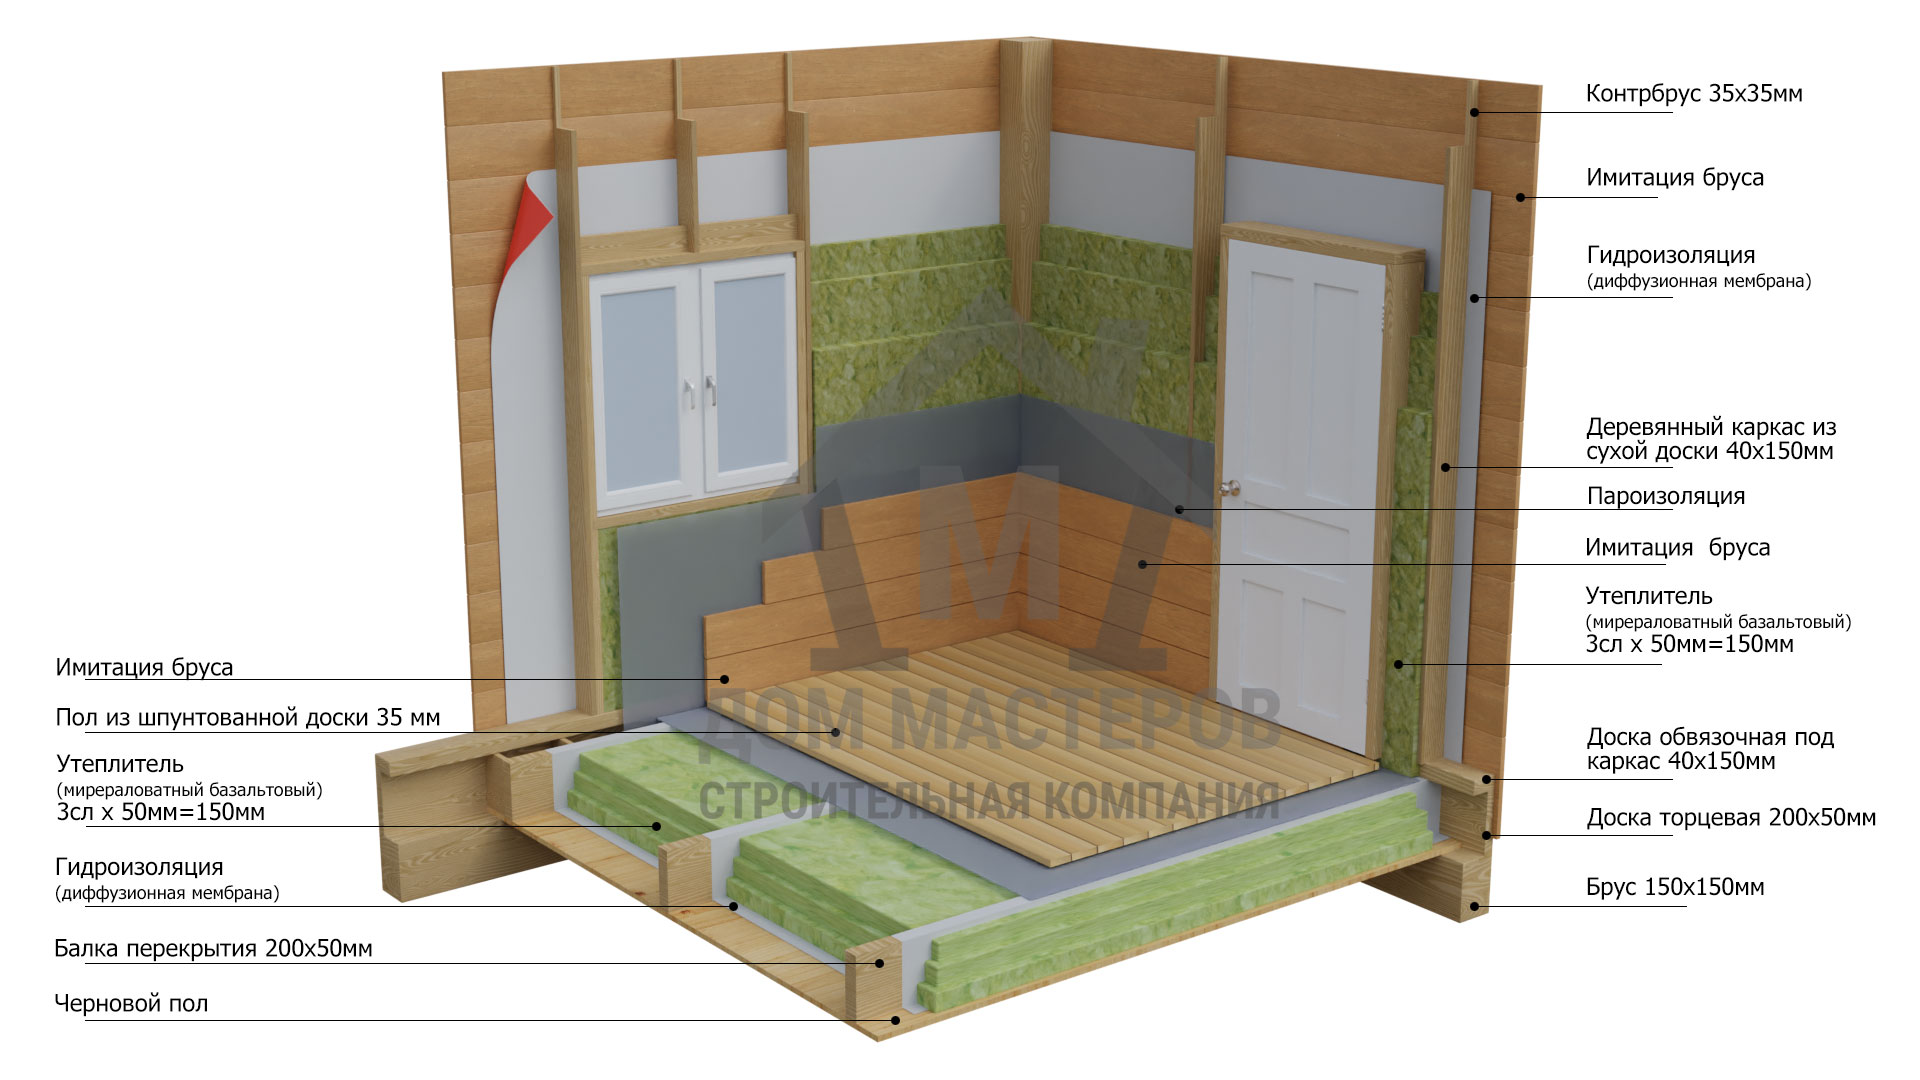 Схема описания стен и внутренней отделки в комплектации дома под ключ.